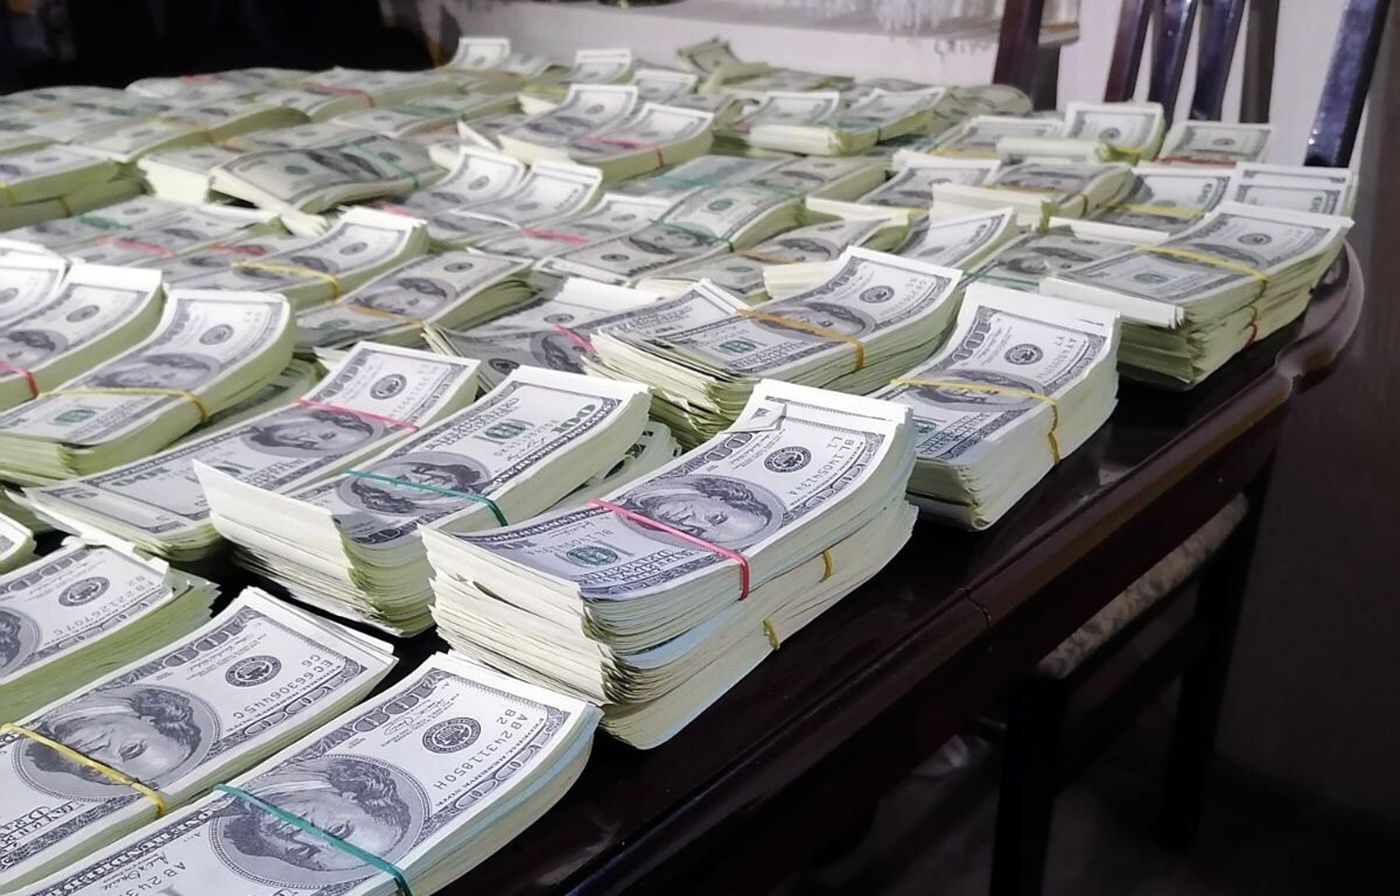 Uhapšeni osumnjičeni za falsifikovanje novca u vrednosti od 2.056.400 američkih dolara